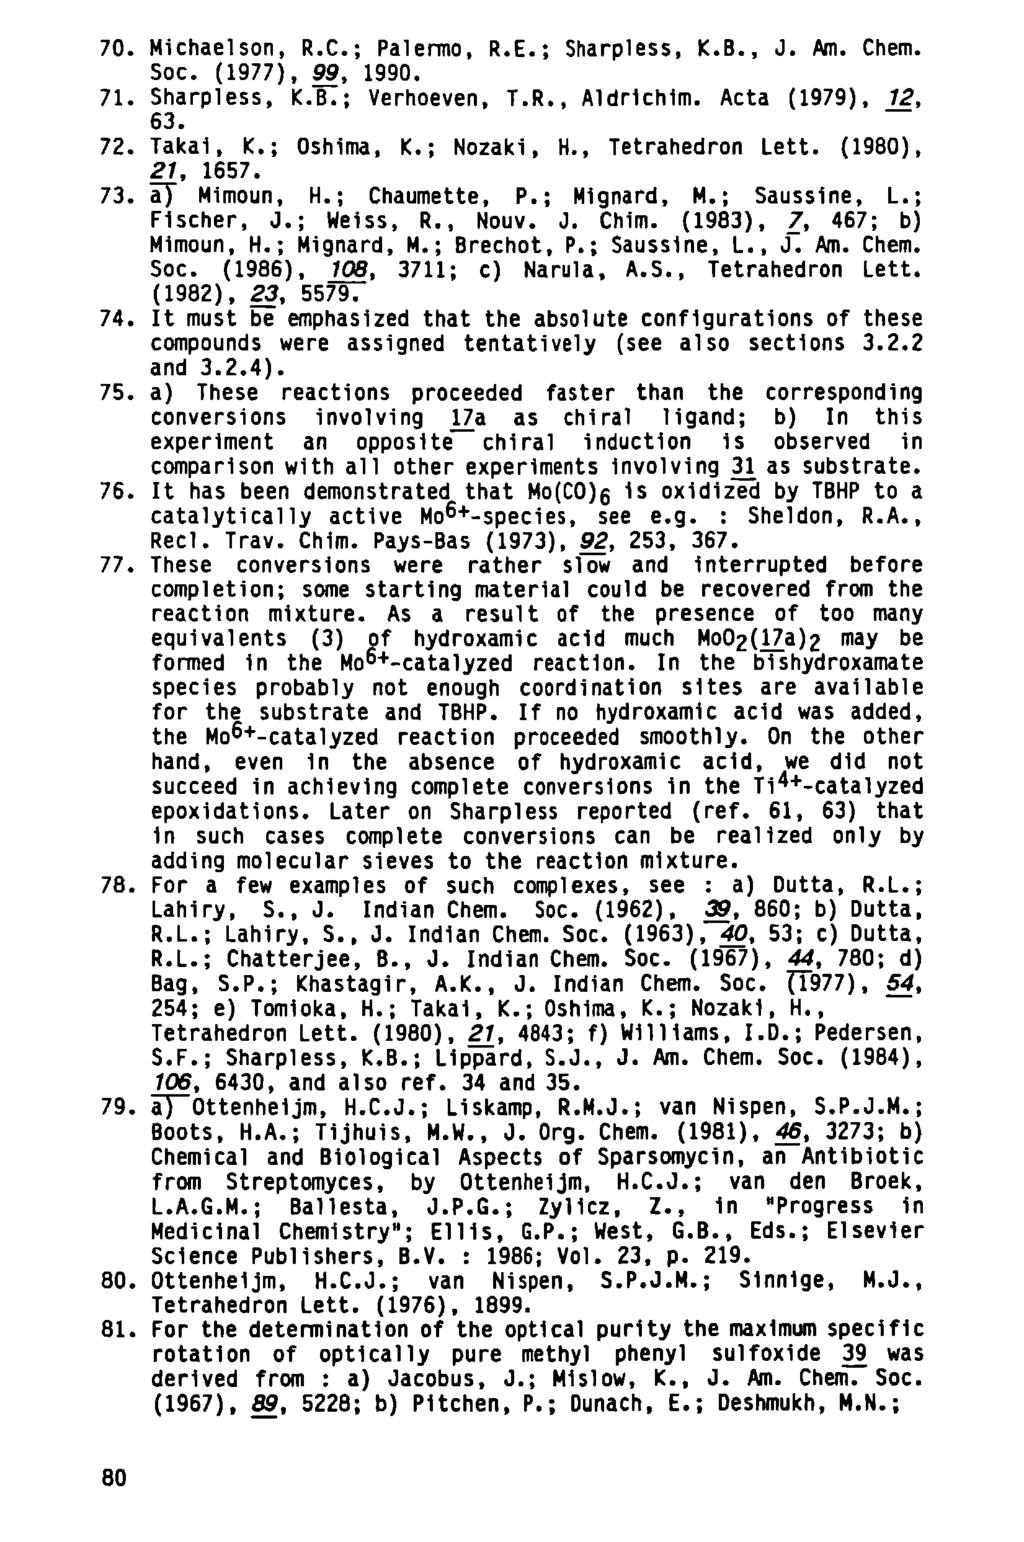 70. Michaelson, R.C.; Palermo, R.E.; Sharpless, K.B., J. Am. Chem. Soc. (1977), 99, 1990. 71. Sharpless, K.B.; Verhoeven, T.R., Aldrlchlm. Acta (1979), 12, 63. 72. Takal, K.; Oshima, K.; Nozaki, H.